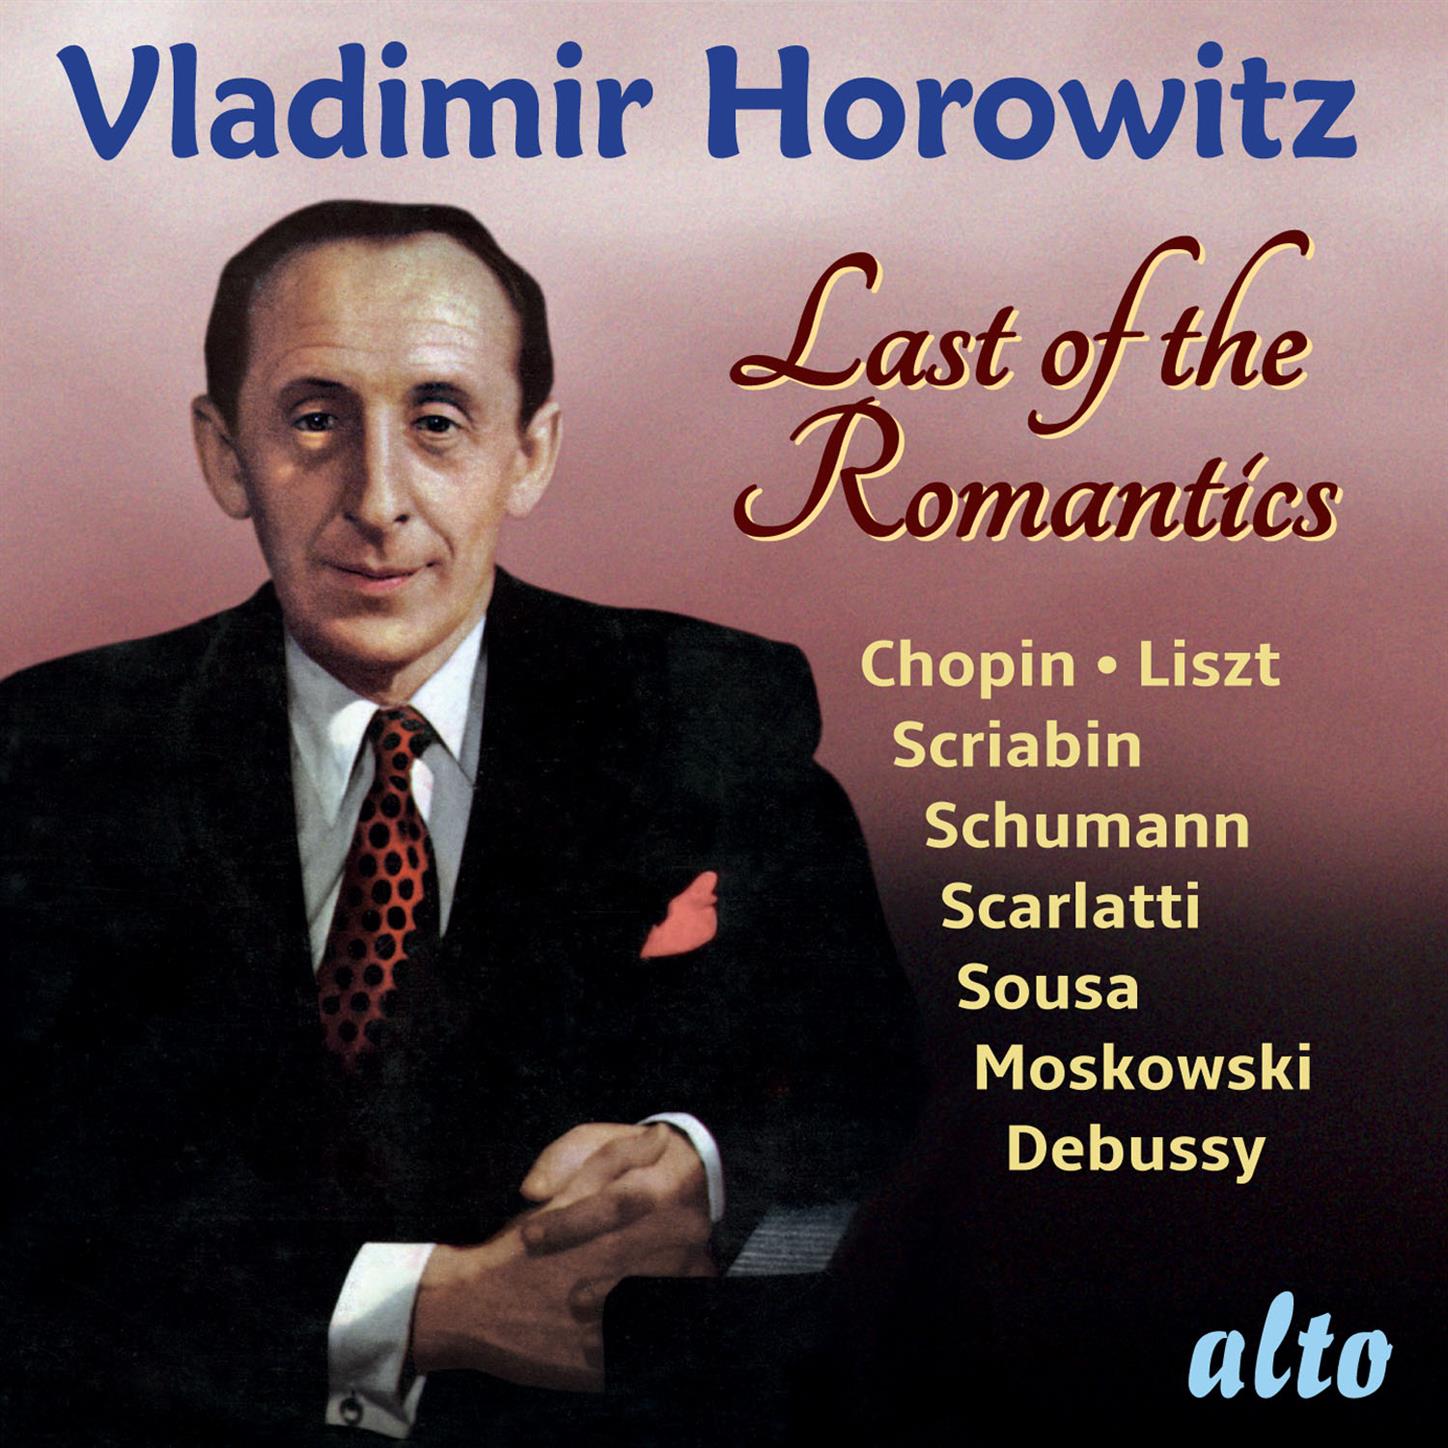 Vladimir Horowitz: Last of the Romantics